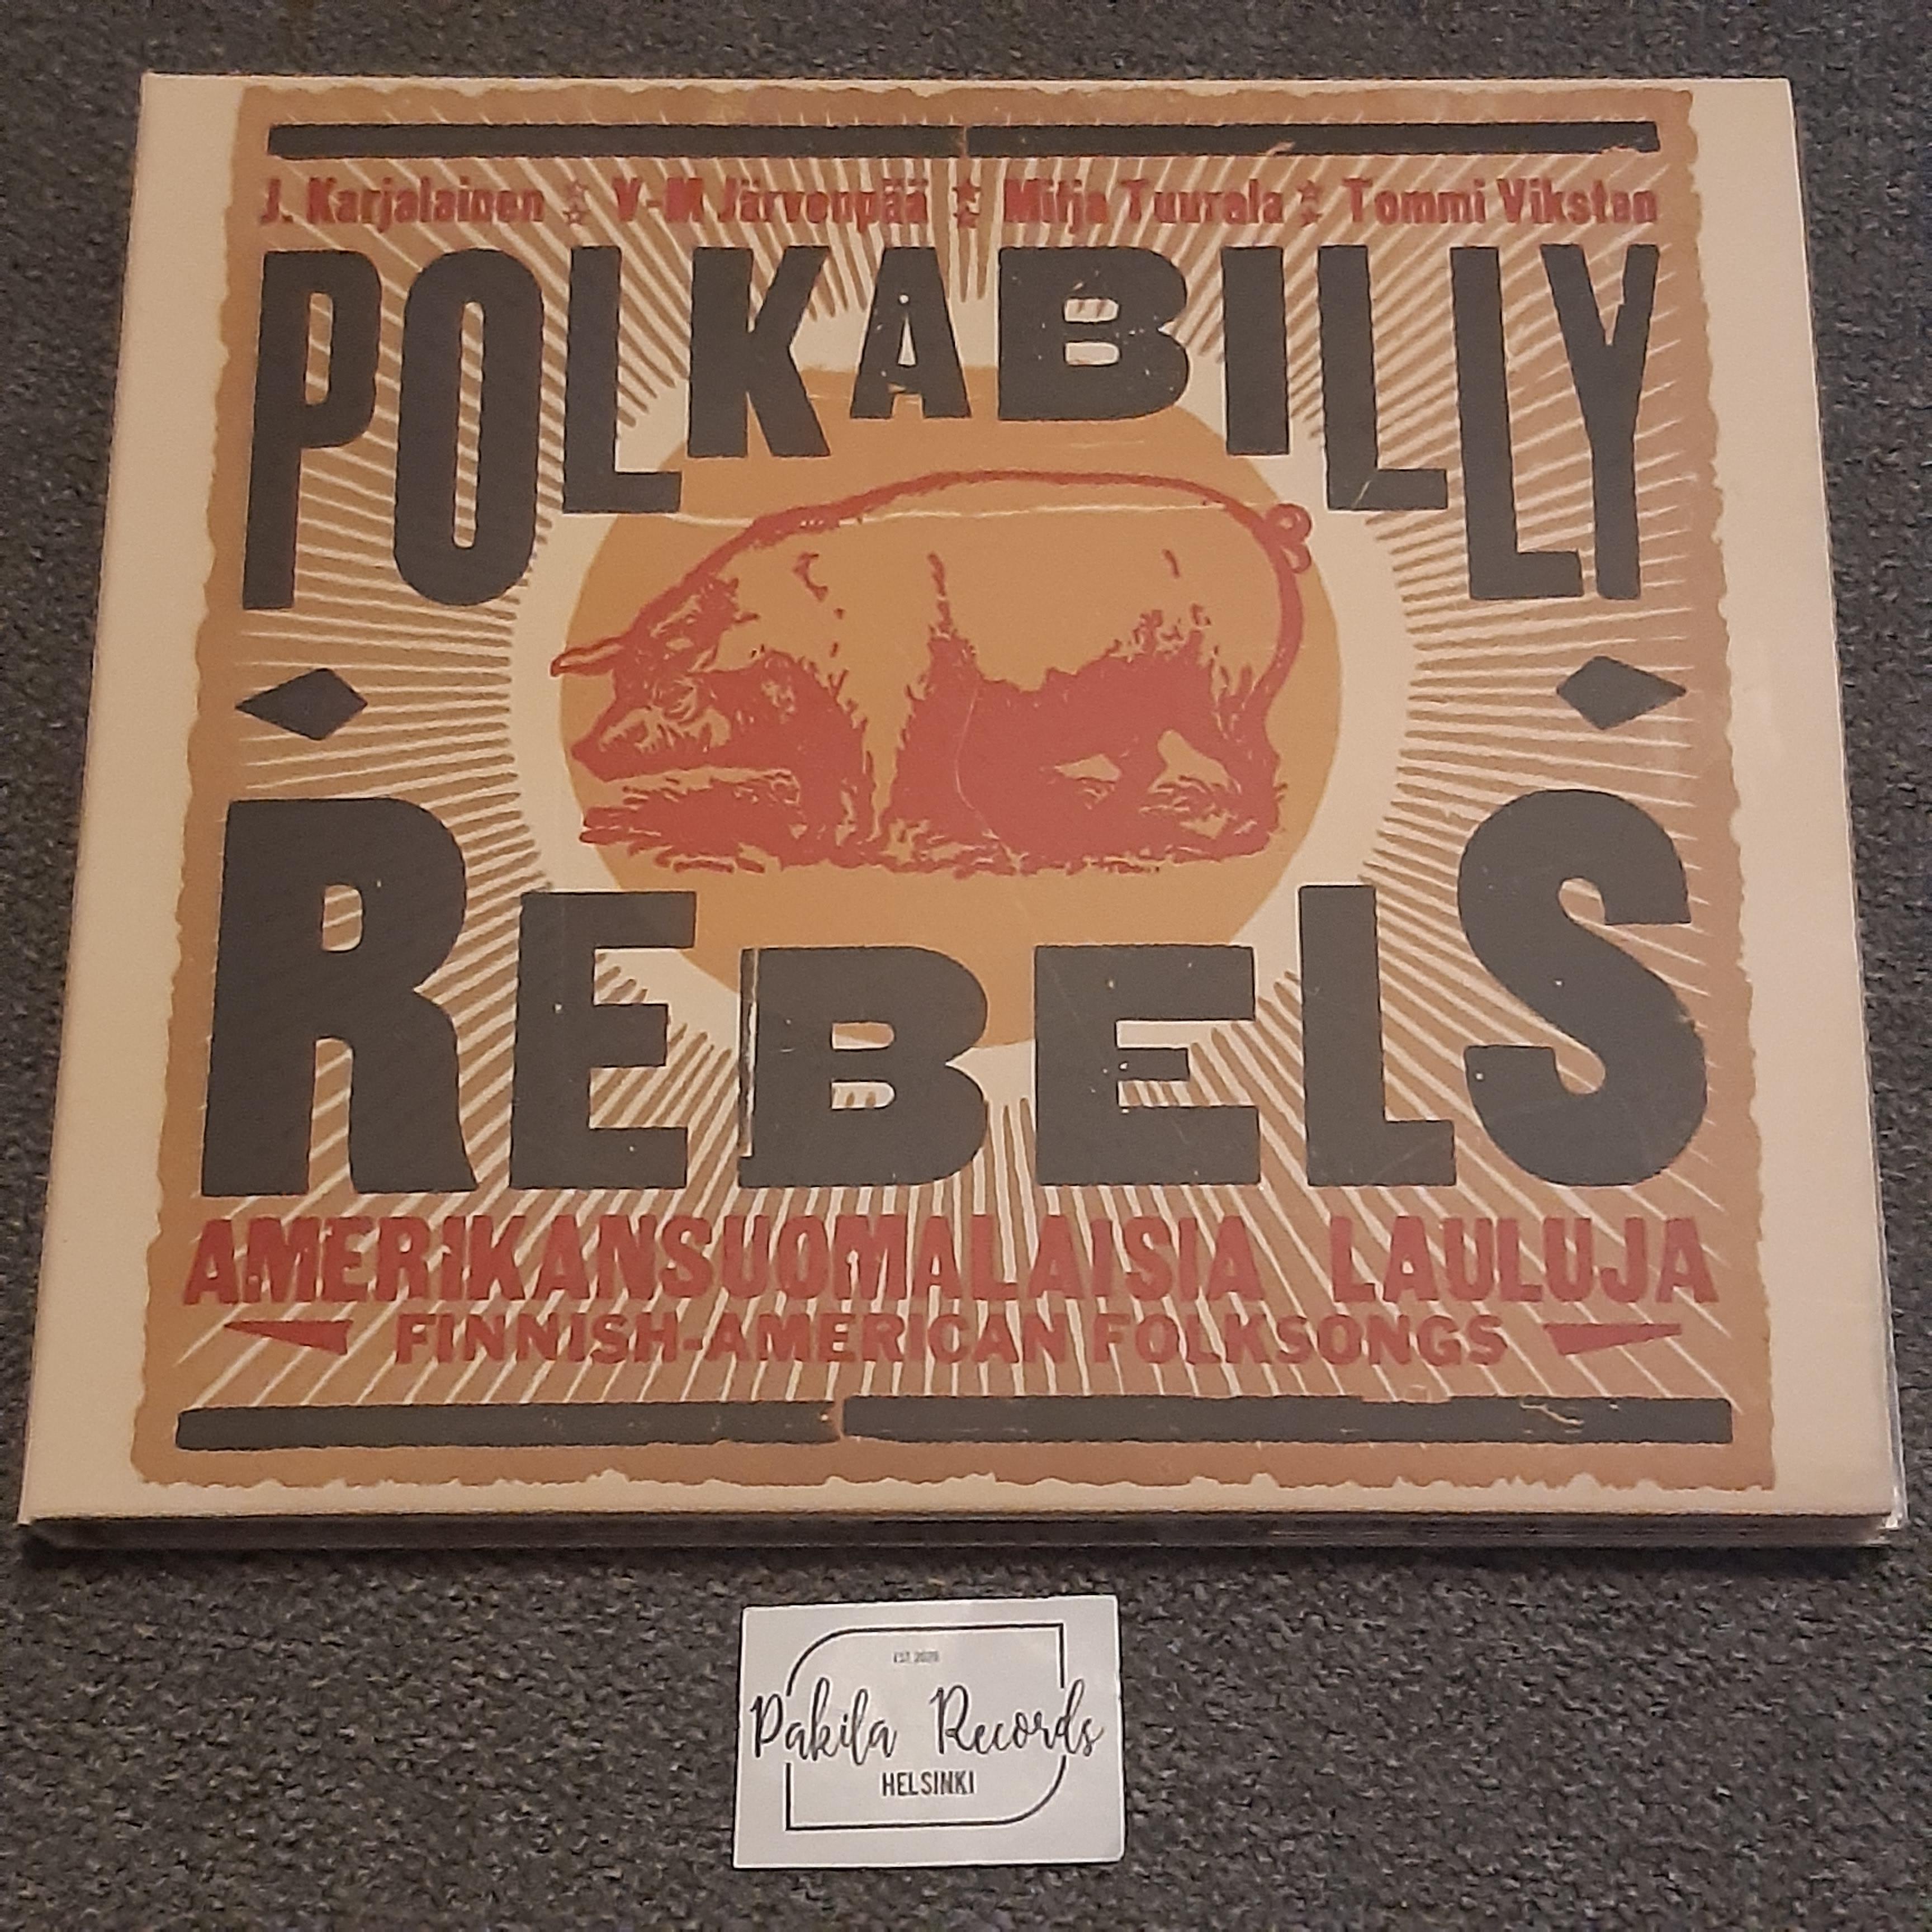 J. Karjalainen - Polkabilly Rebels - CD (käytetty)